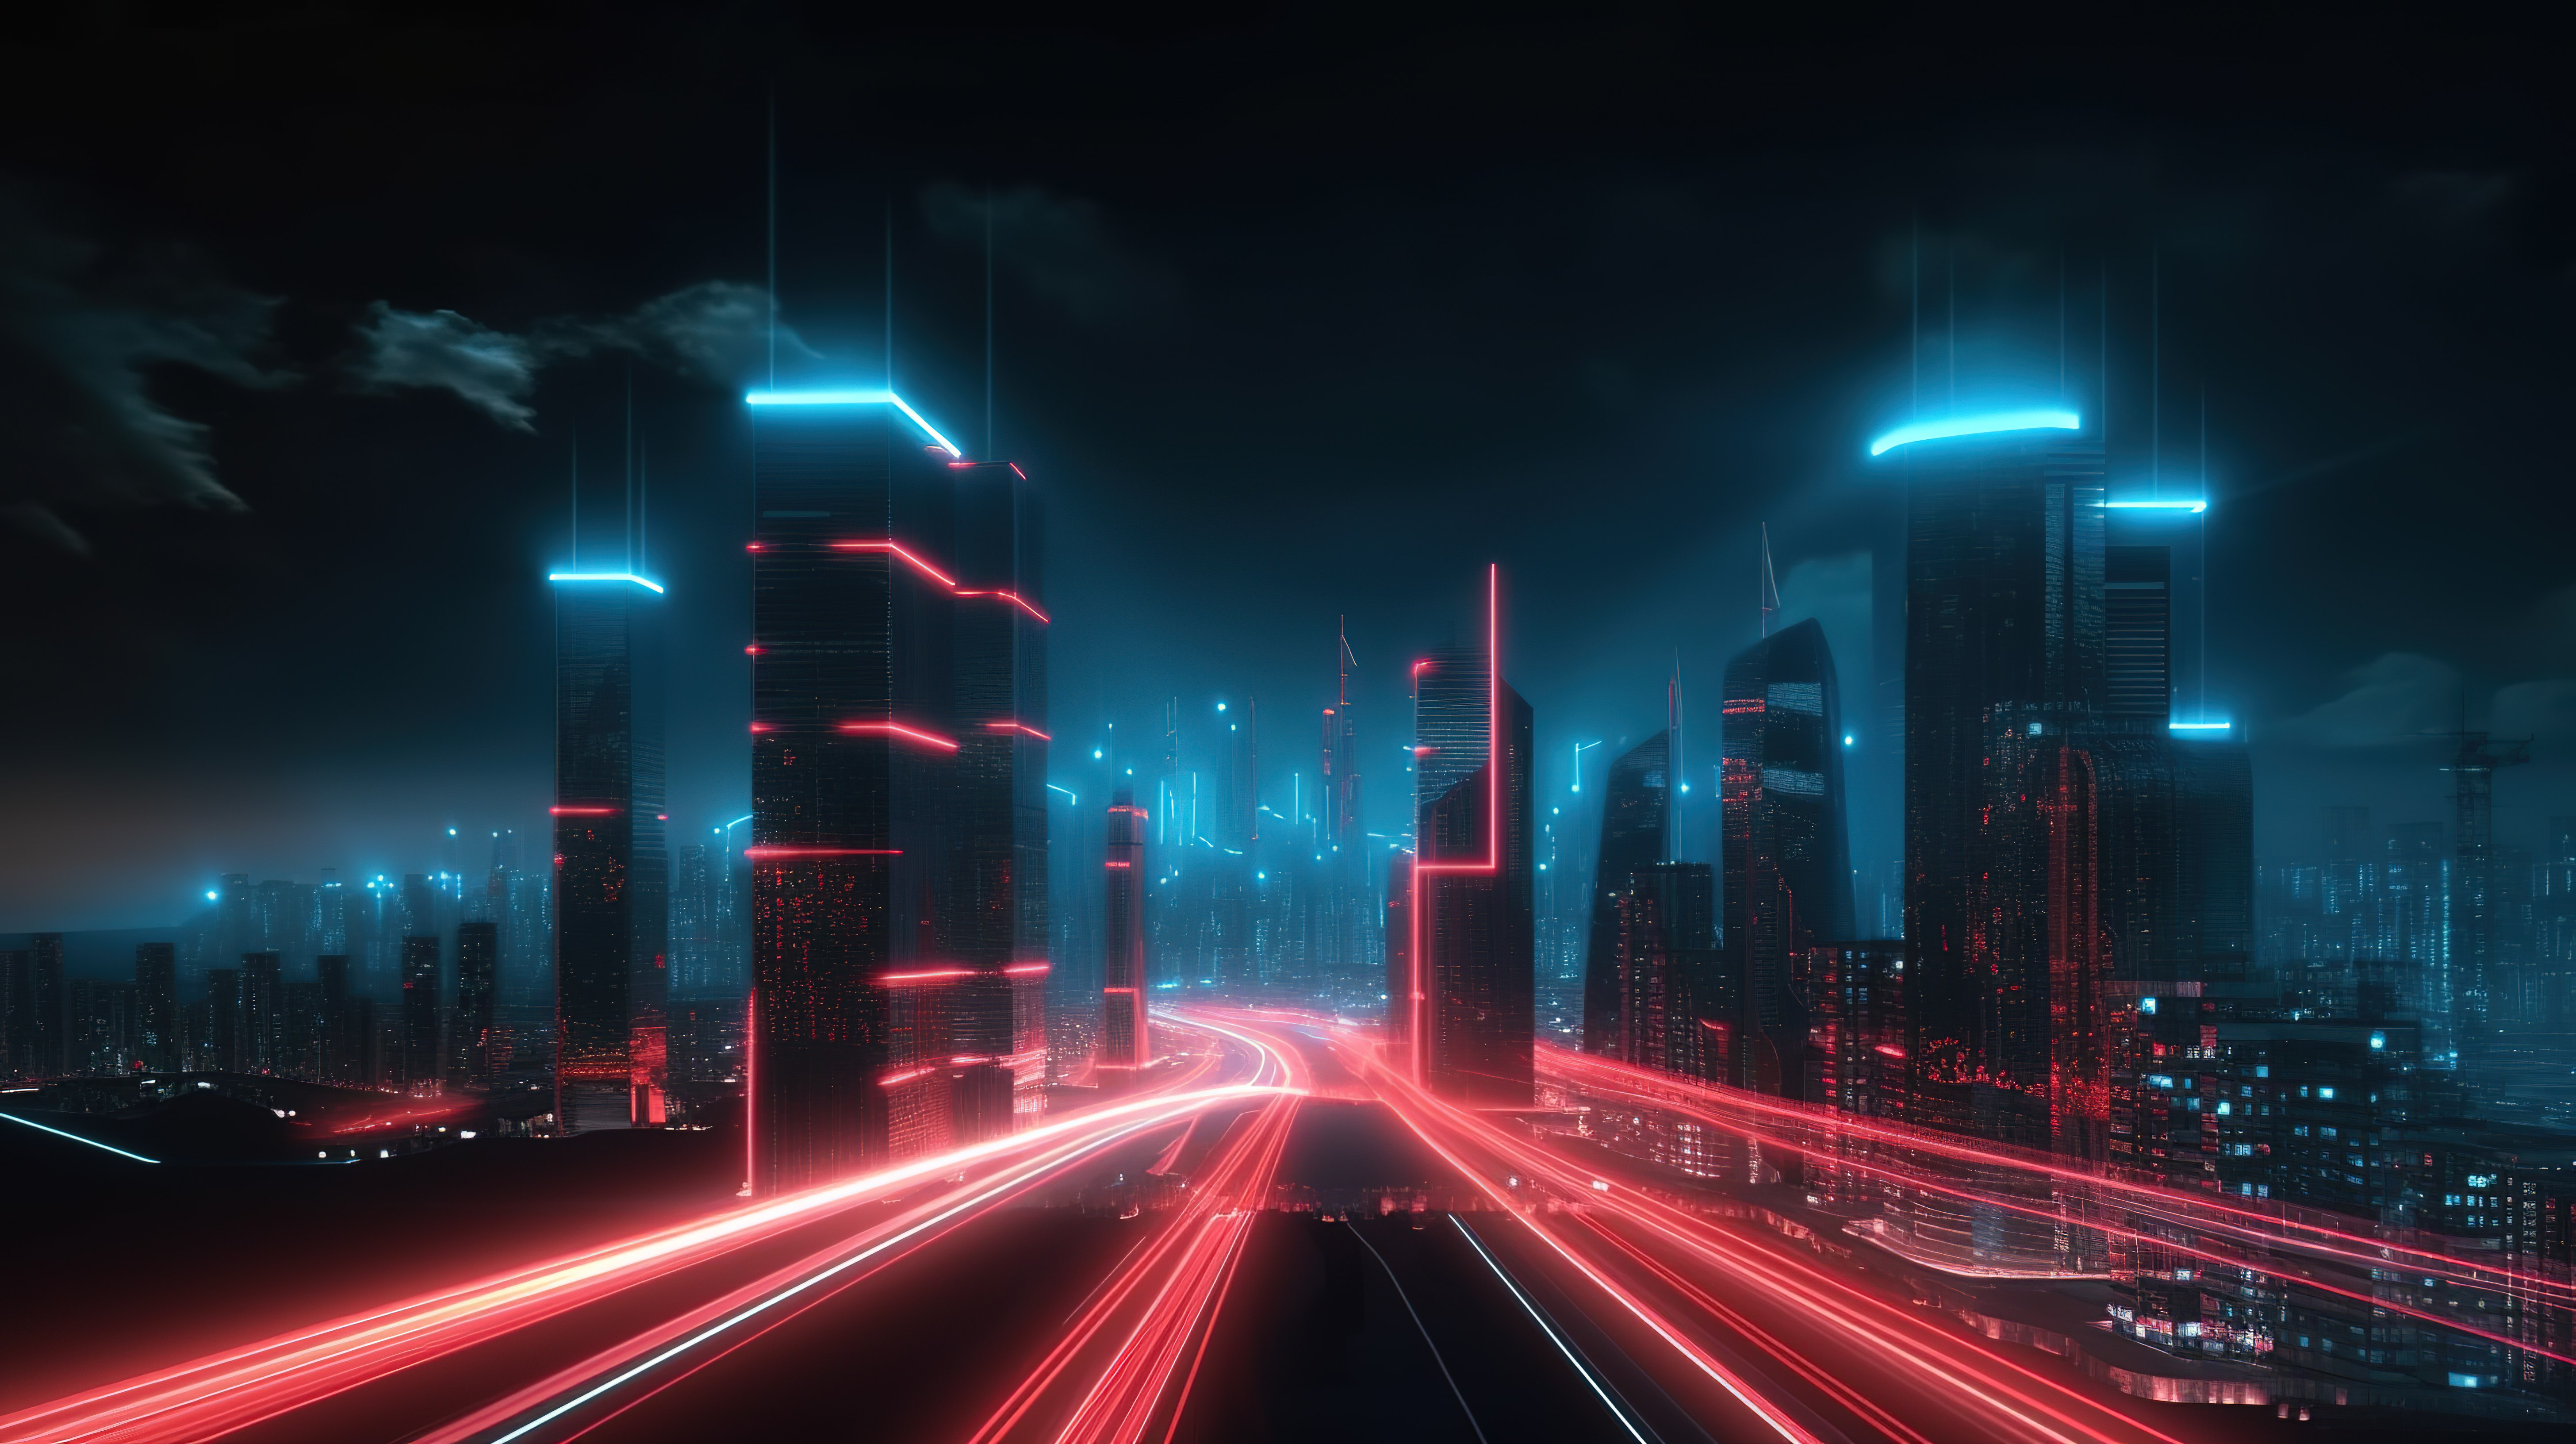 以 3D 形式呈现的城市景观，道路上有充满活力的红色和浅蓝色灯光痕迹图片